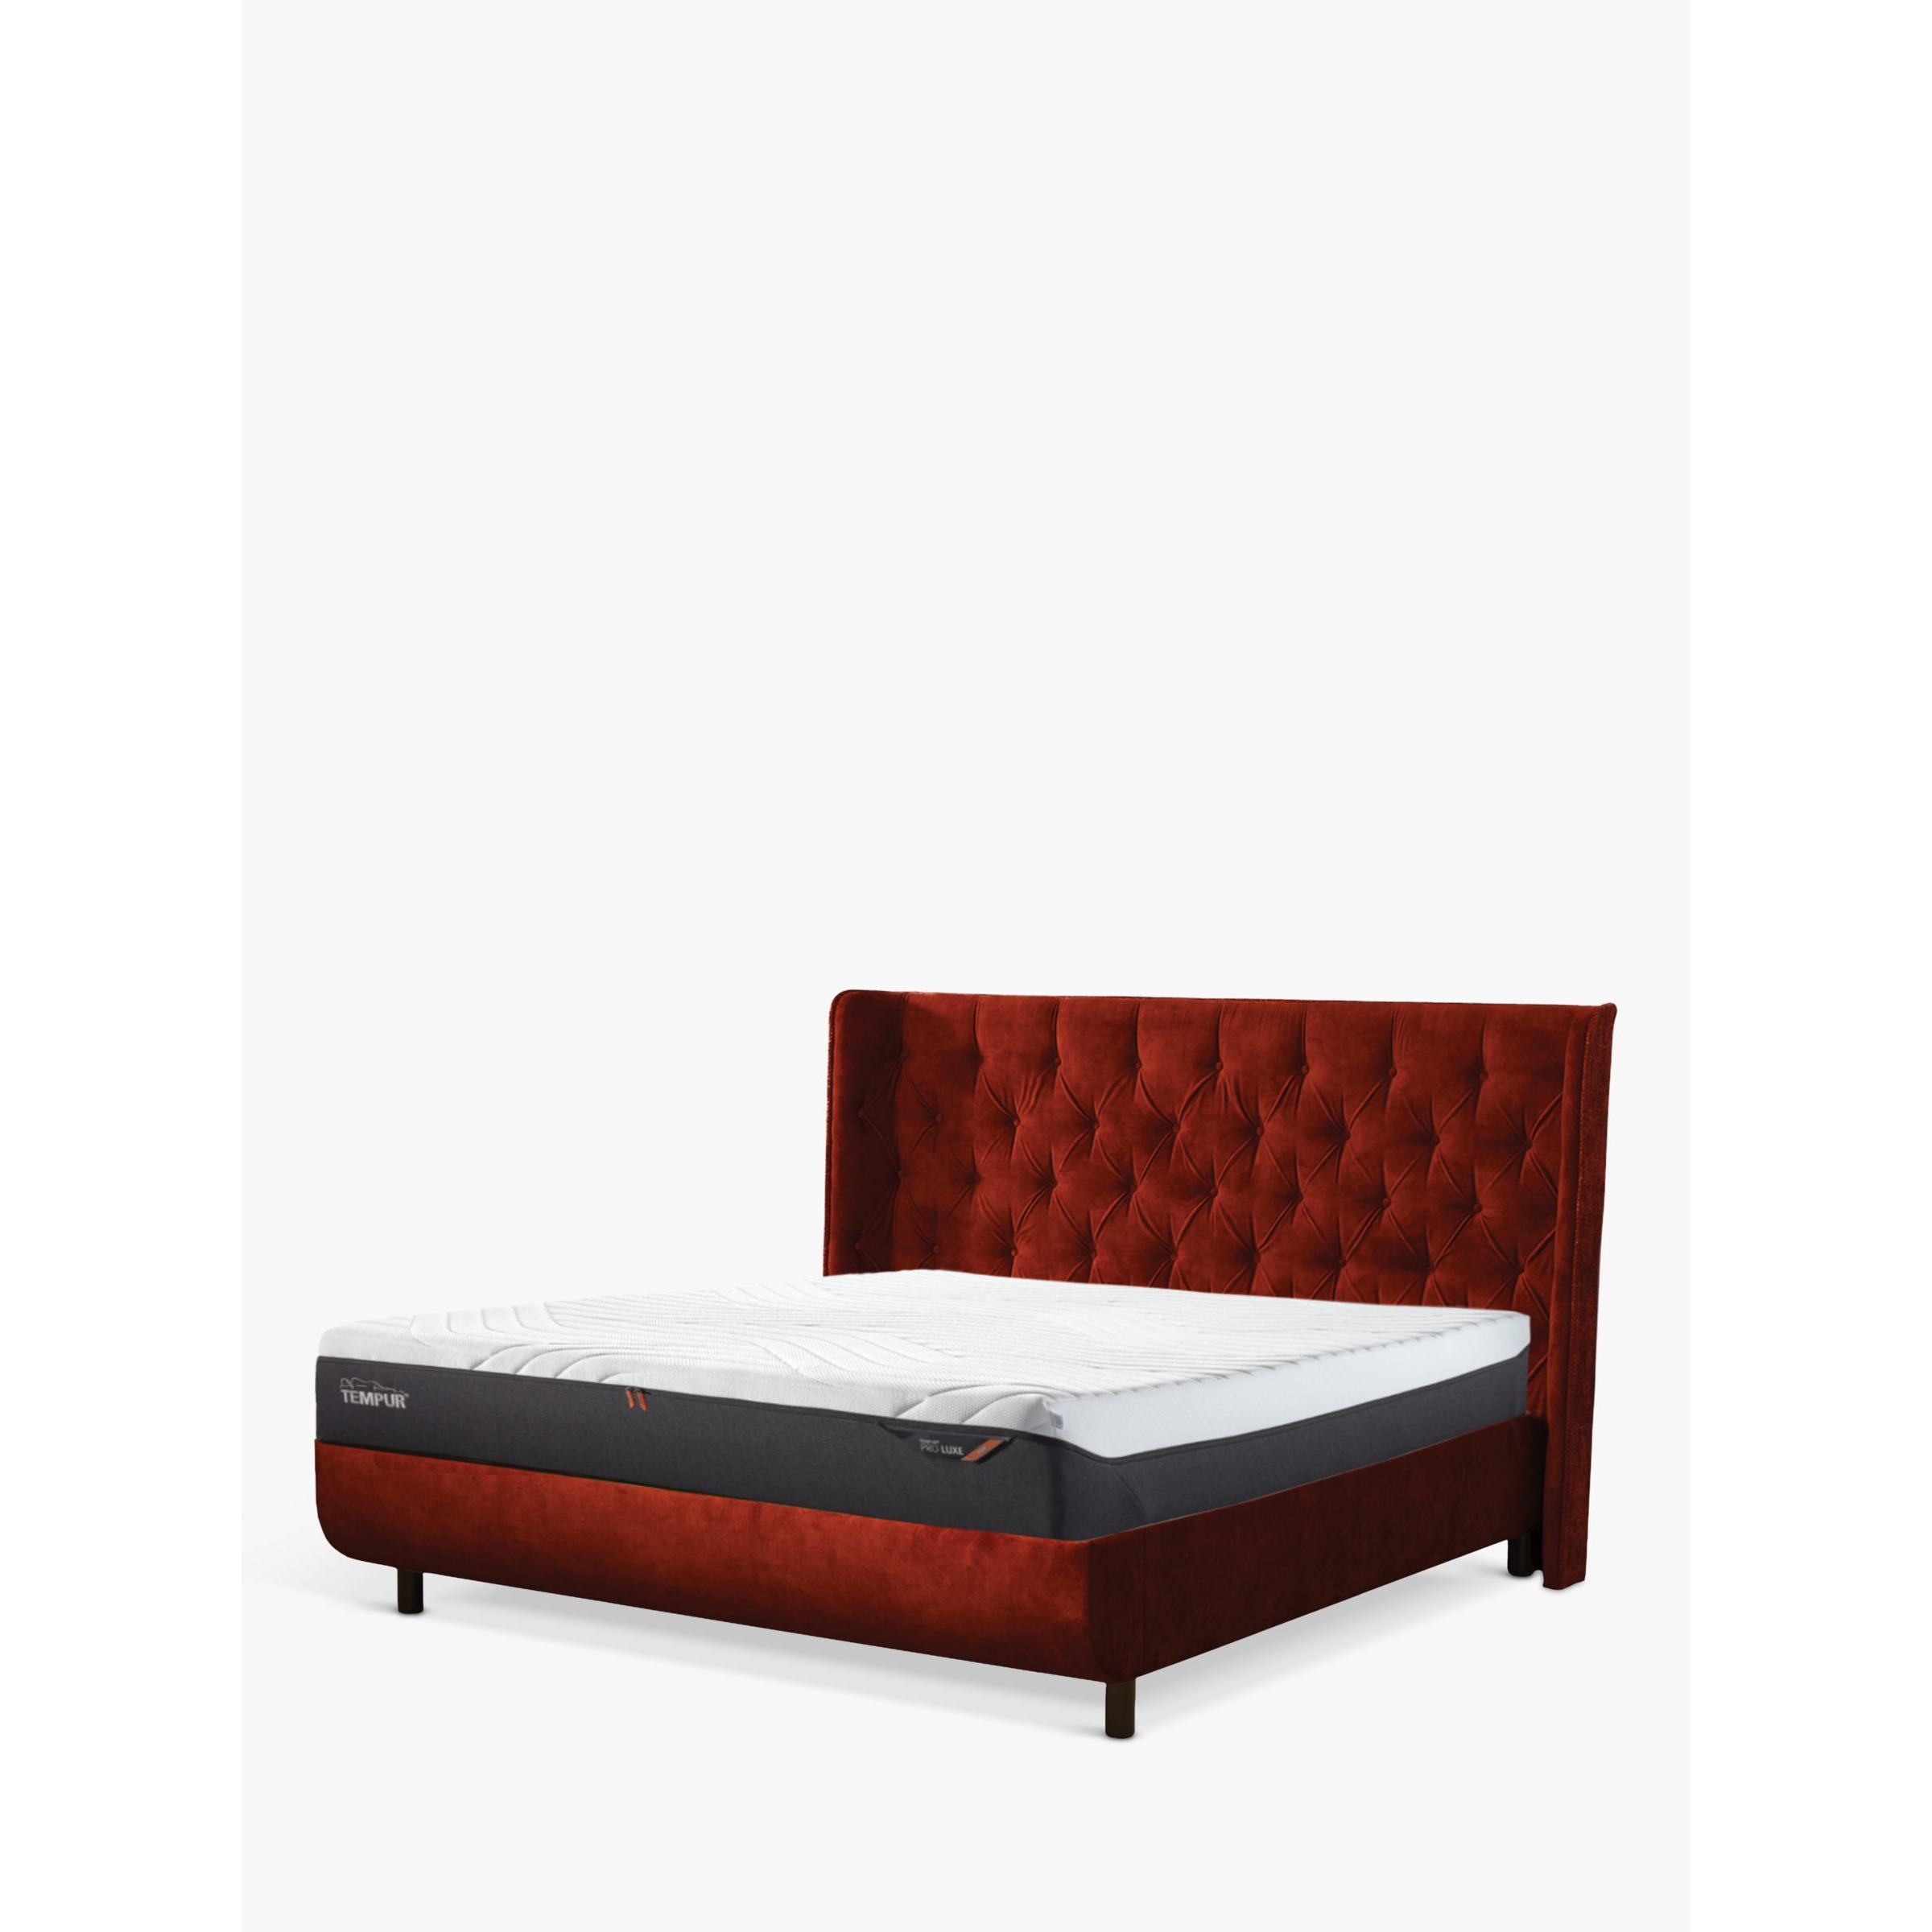 TEMPUR® Arc™ Adjustable Disc Luxury Upholstered Bed Frame, Super King Size - image 1